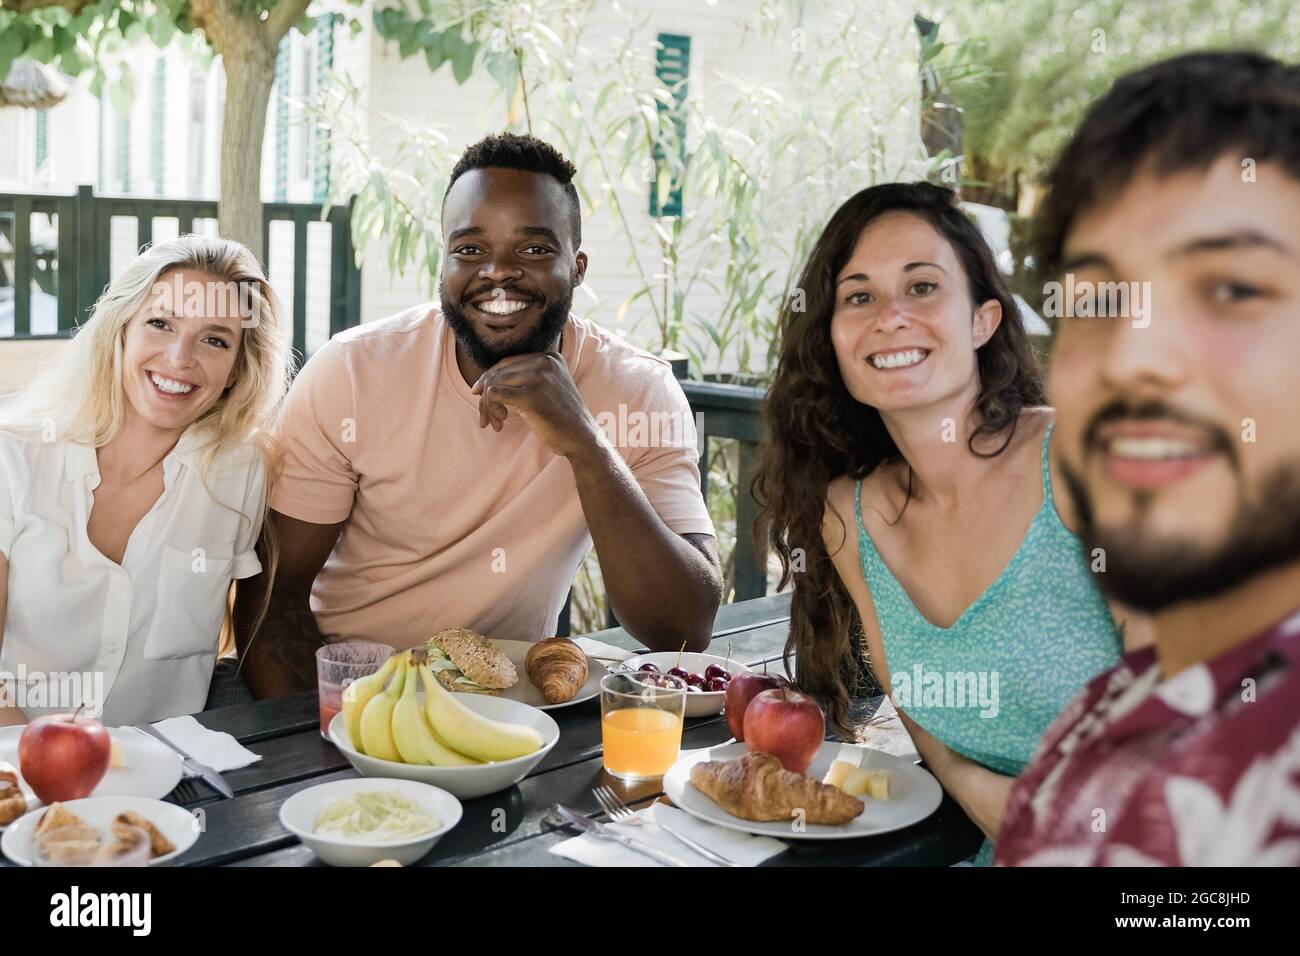 Multirassische Menschen tun gesundes Picknick-Frühstück auf dem Land Bauernhof Haus - glückliche Freunde Spaß beim Essen im Freien - Fokus auf afrikanischen Mann Gesicht Stockfoto